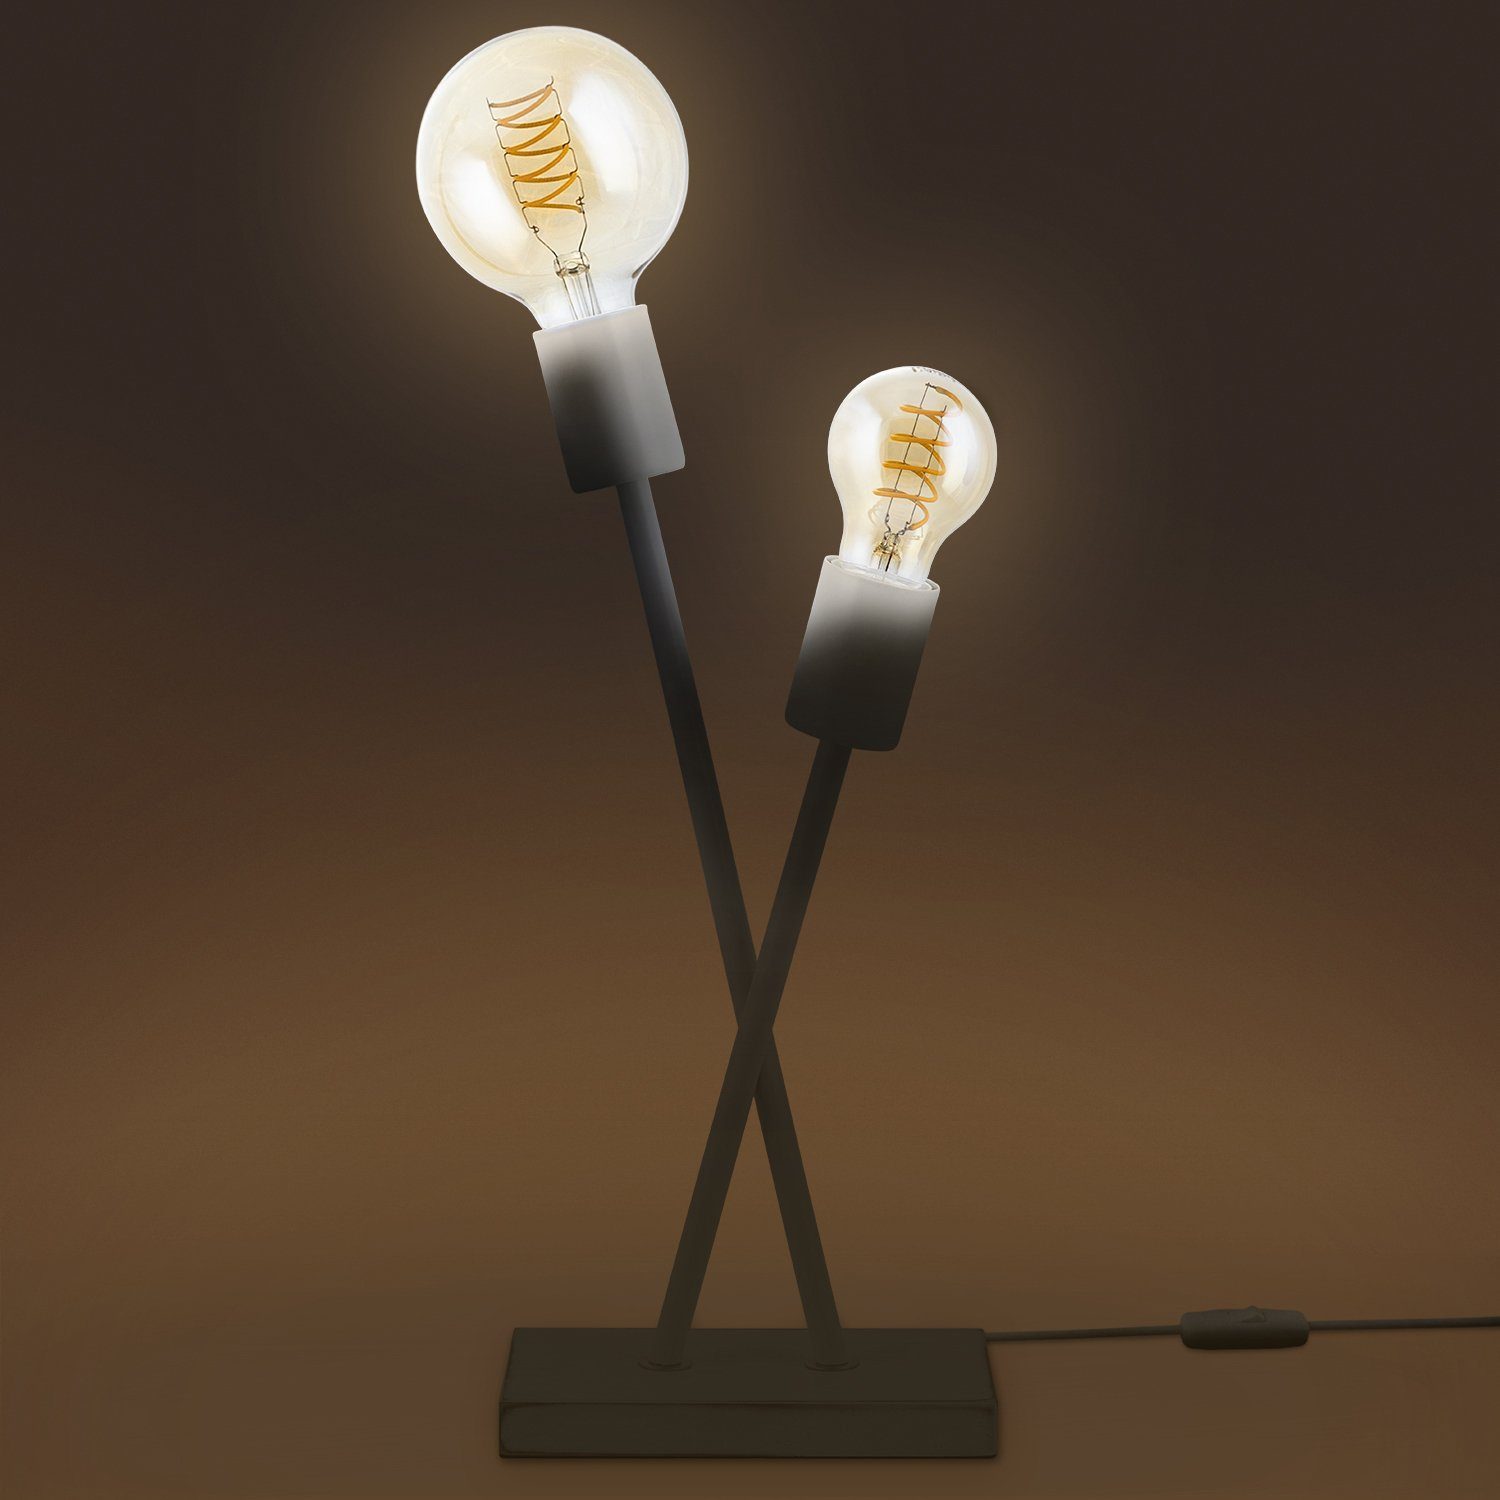 Vintage LED Stehlampe ohne Home Industrial Leuchtmittel, Tischleuchte Design IKS, Lampe Paco Wohnzimmer E27 Retro